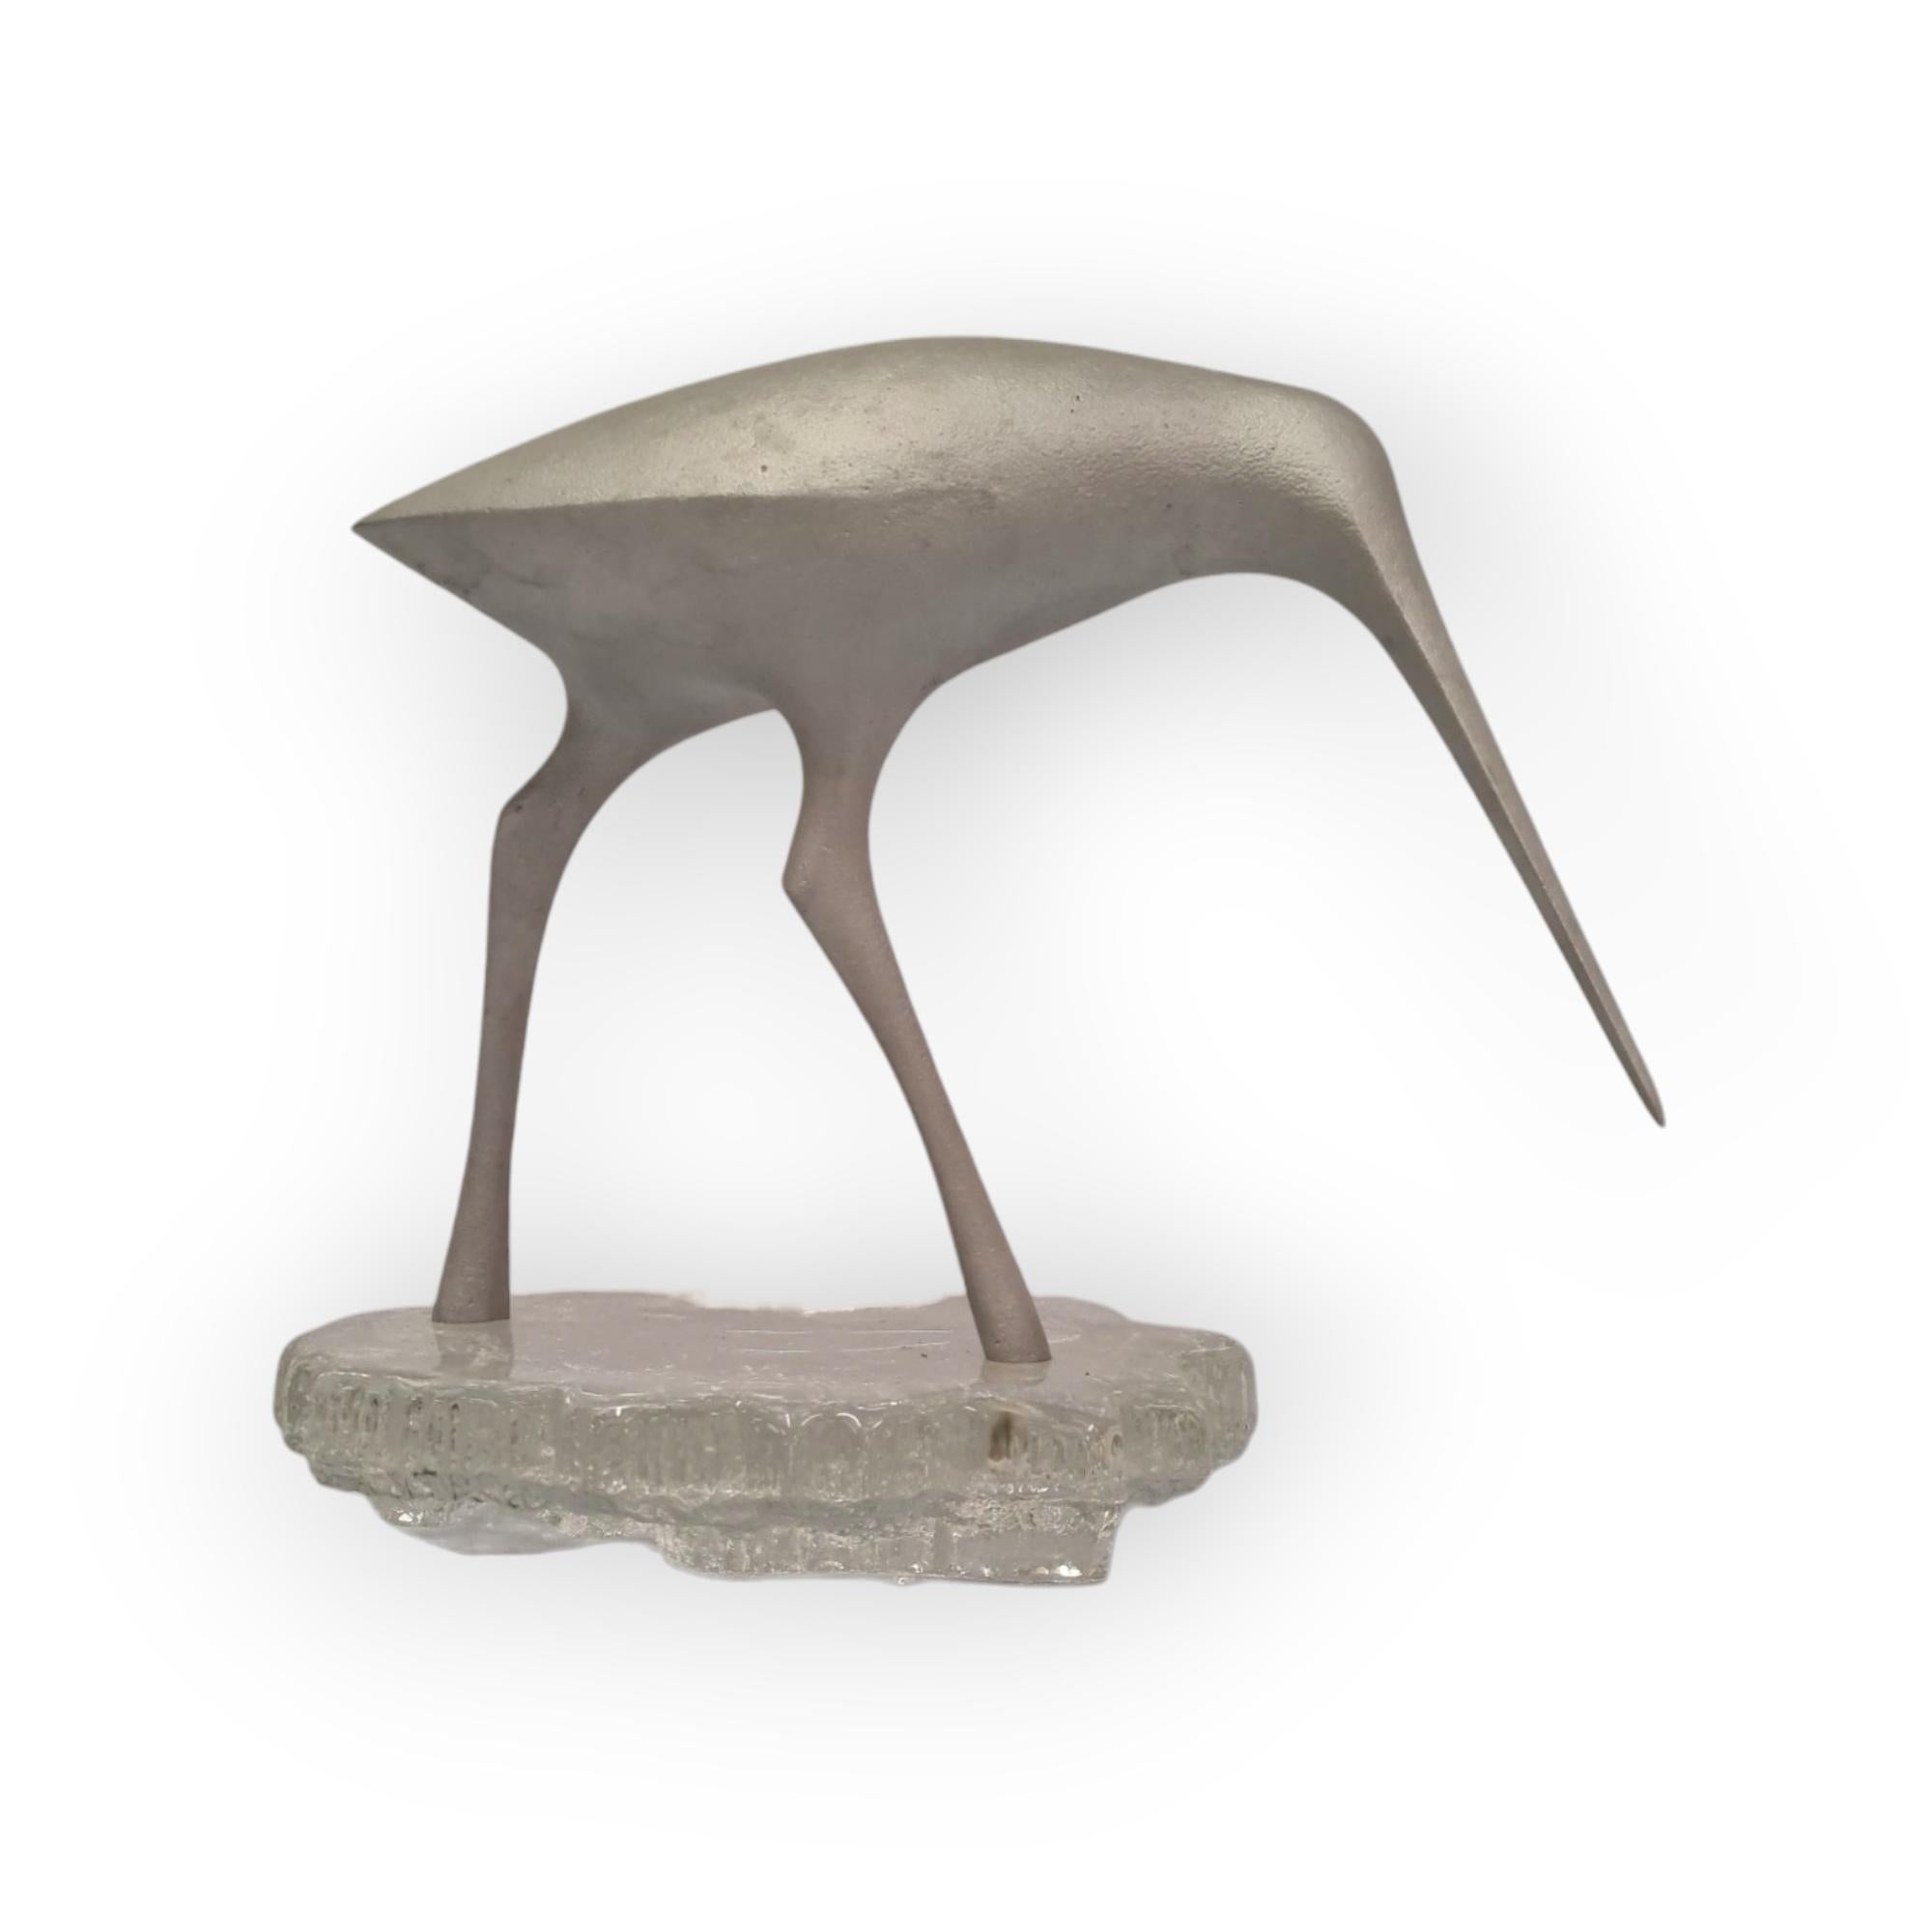 Finnish `Suokurppa`or Bog Snipe bird sculpture by Tapio Wirkkala for Kultakeskus